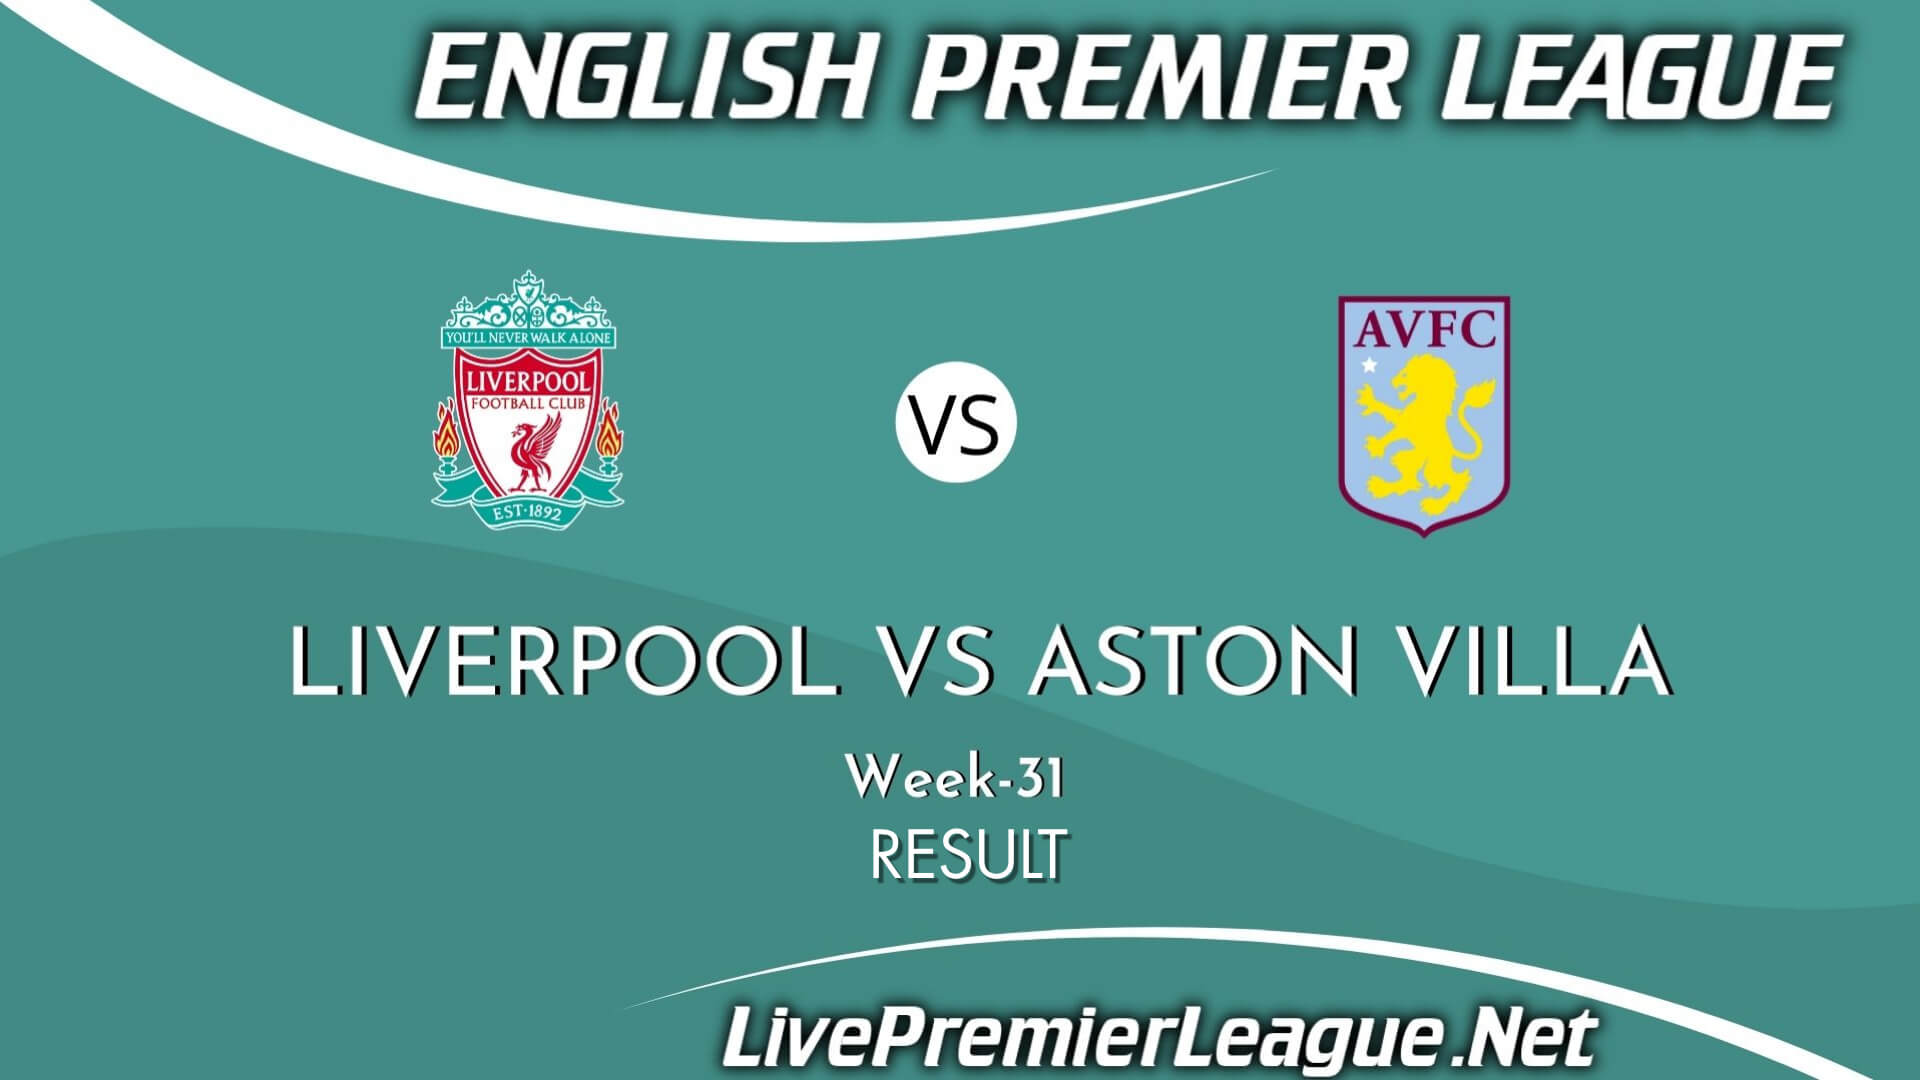 Liverpool Vs Aston Villa Result 2021 | EPL Week 31